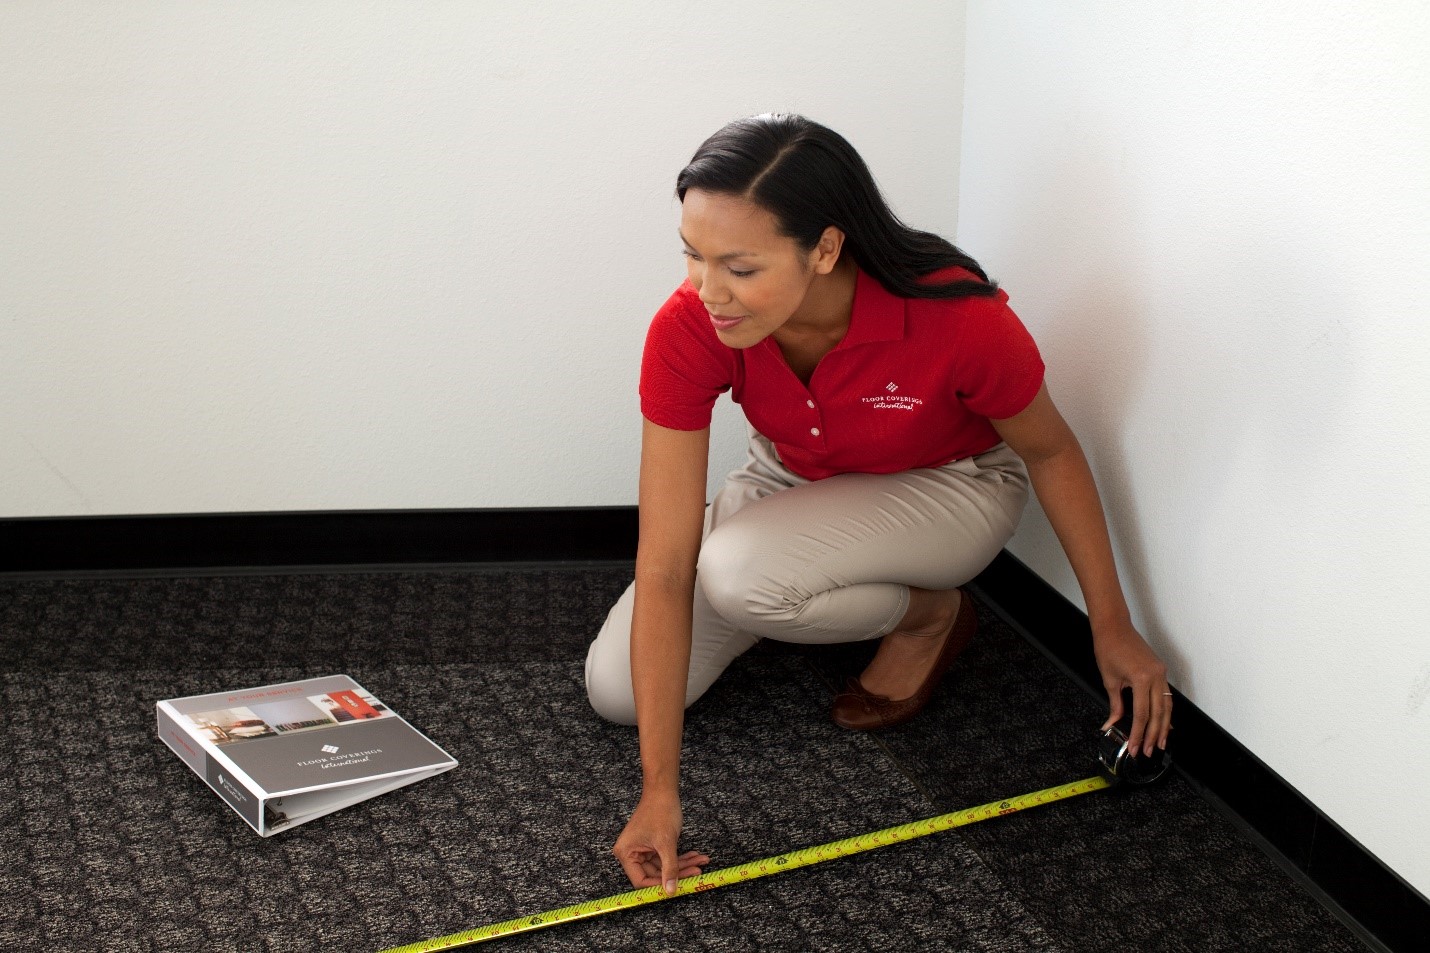 Floor Coverings International employee measuring carpet